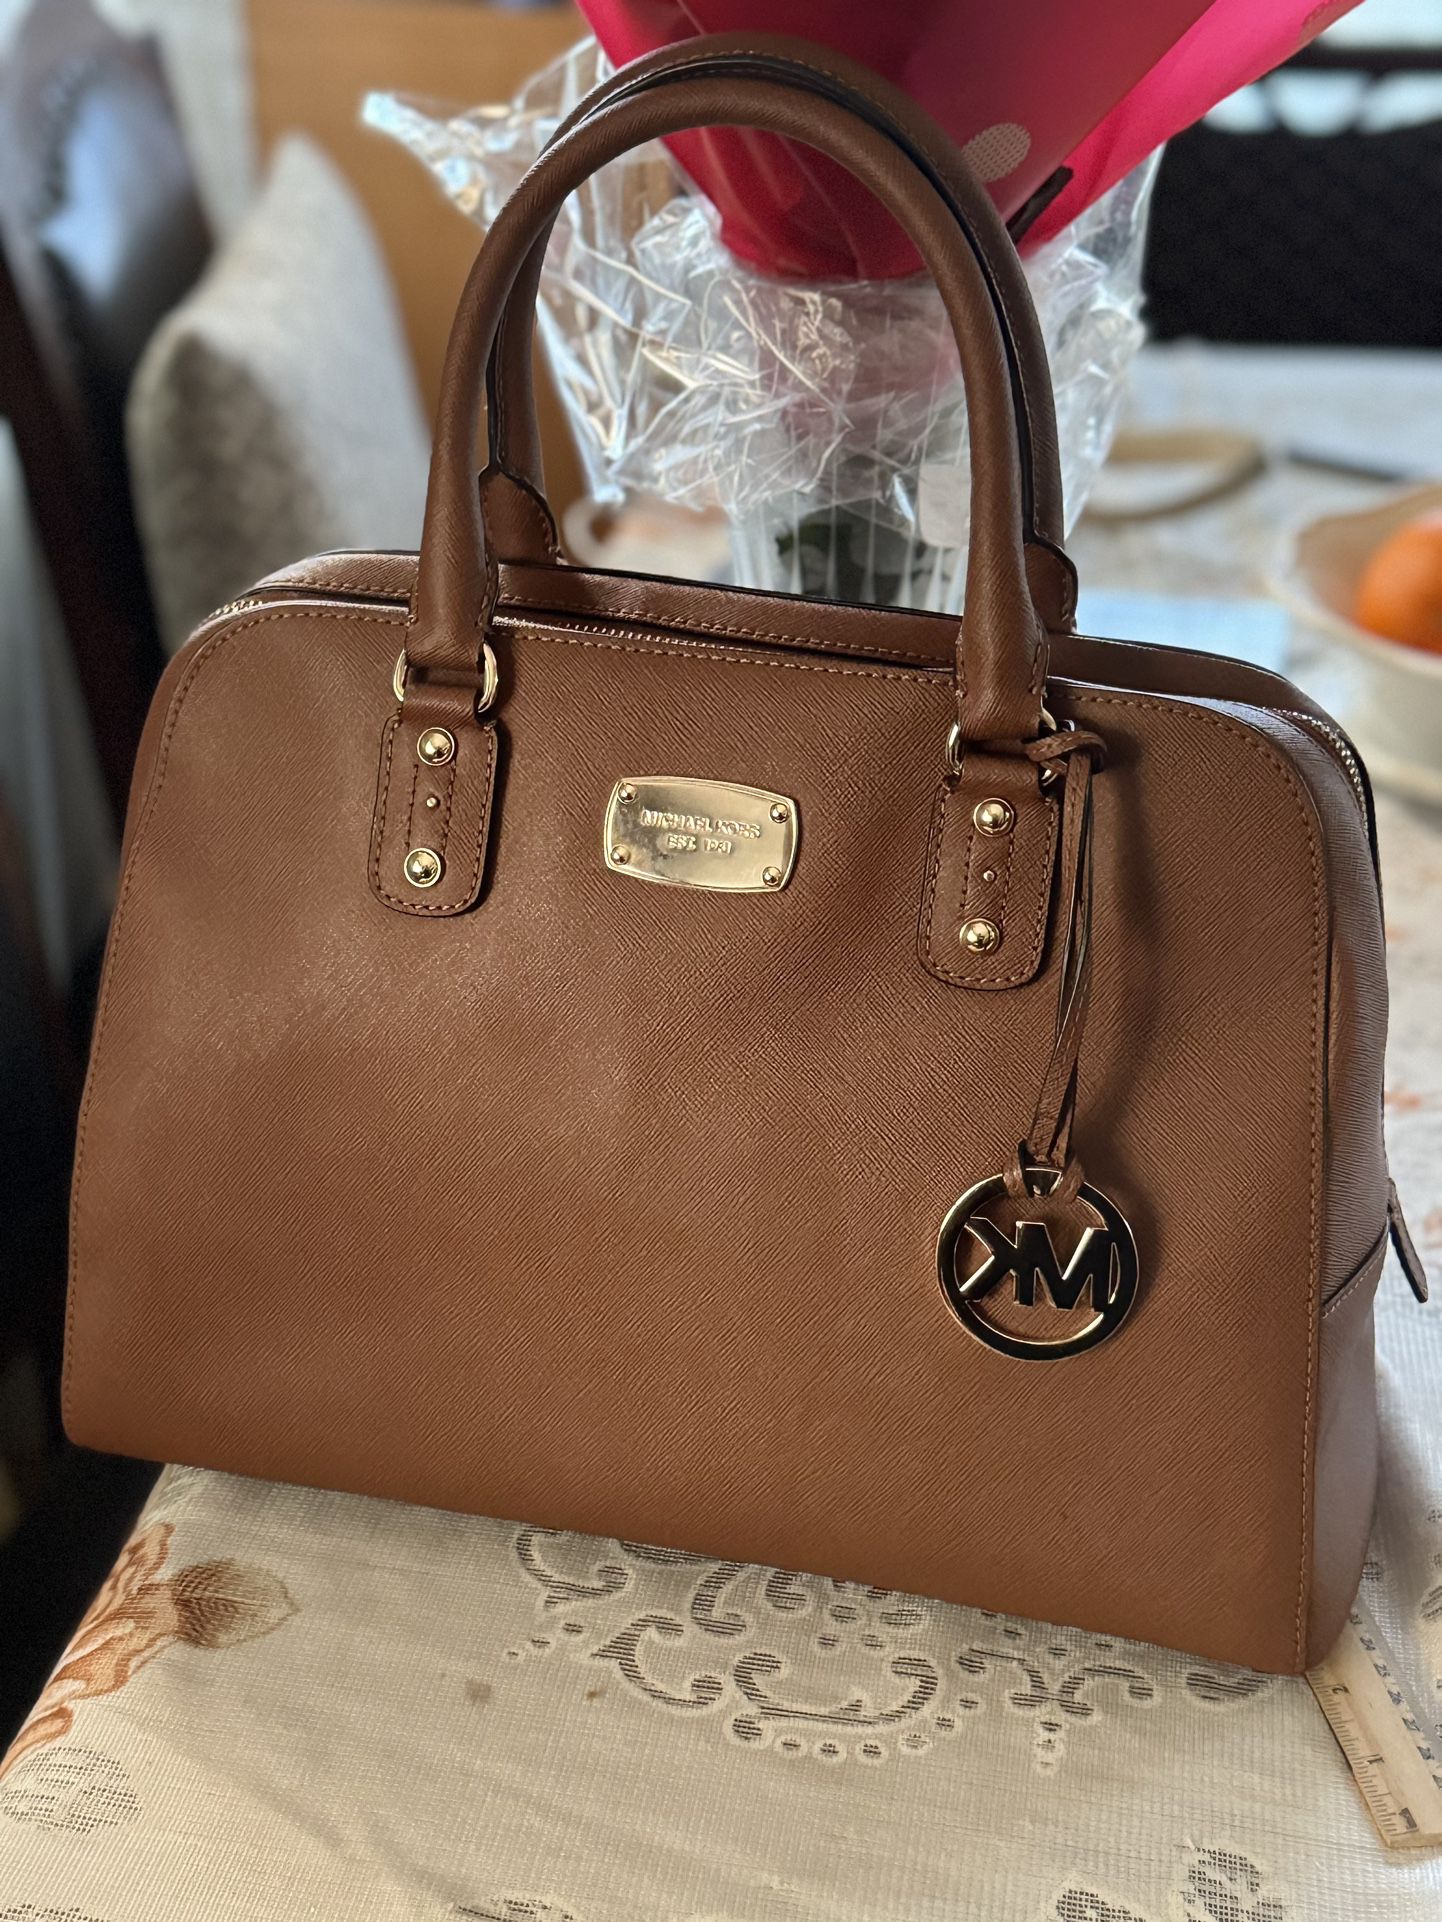 🍀💕Michael Kors Brown Large Saffiano Luggage Bag